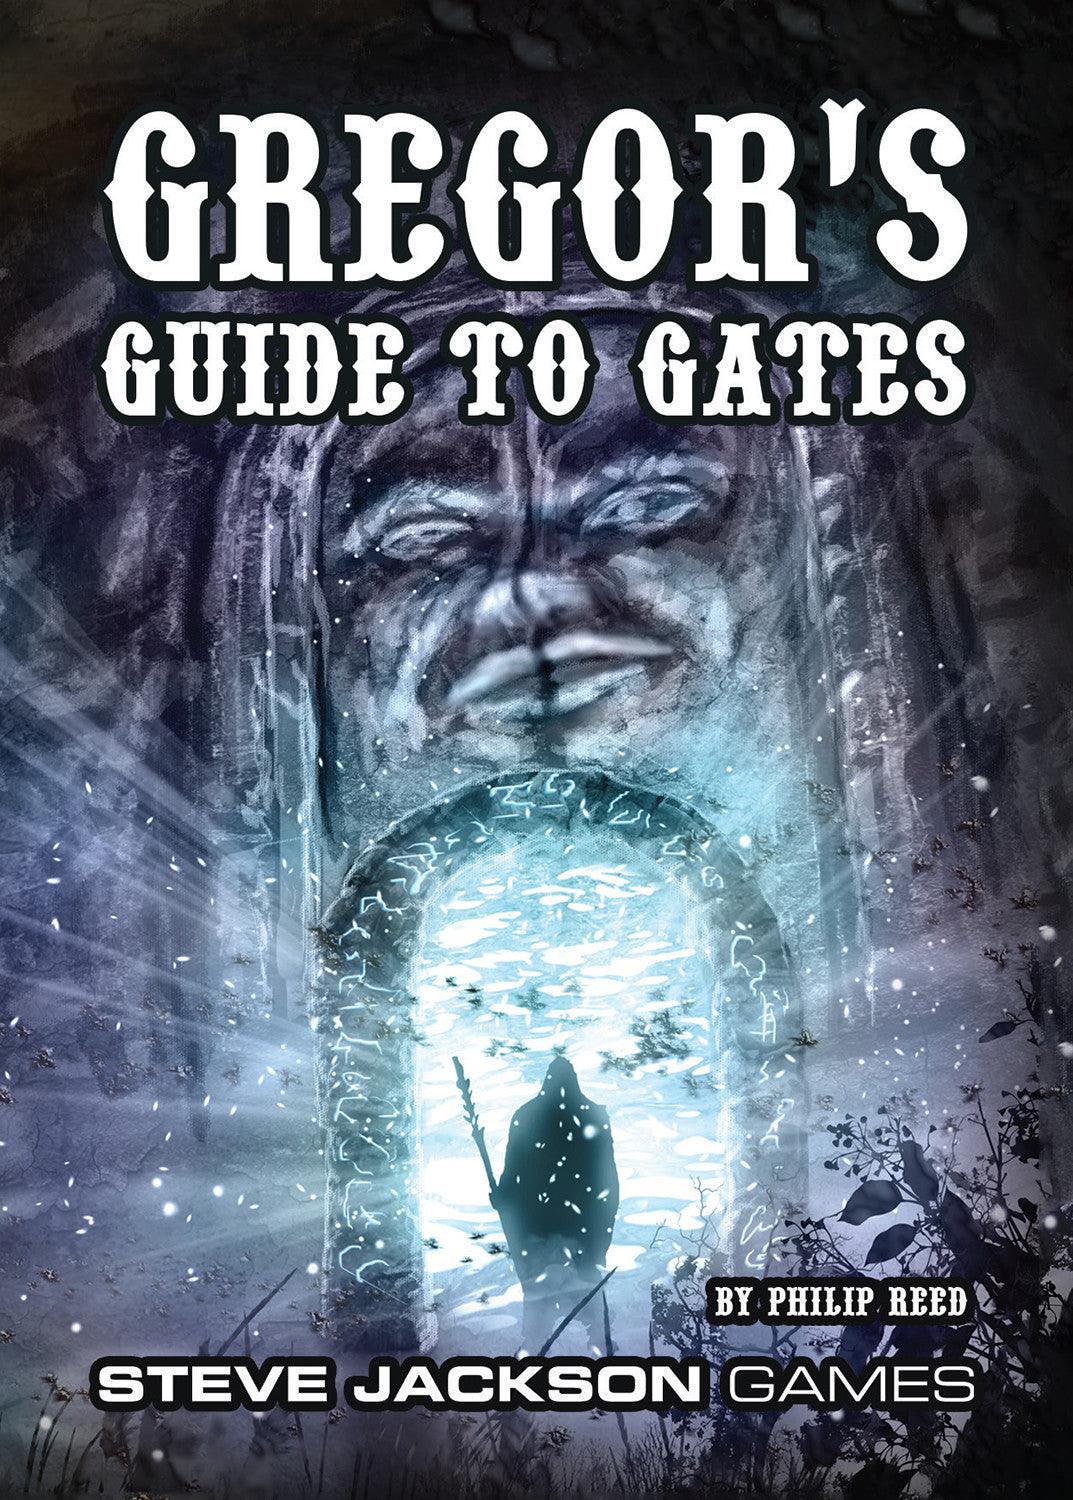 VR-104219 Gregor's Guide to Gates - Steve Jackson Games - Titan Pop Culture